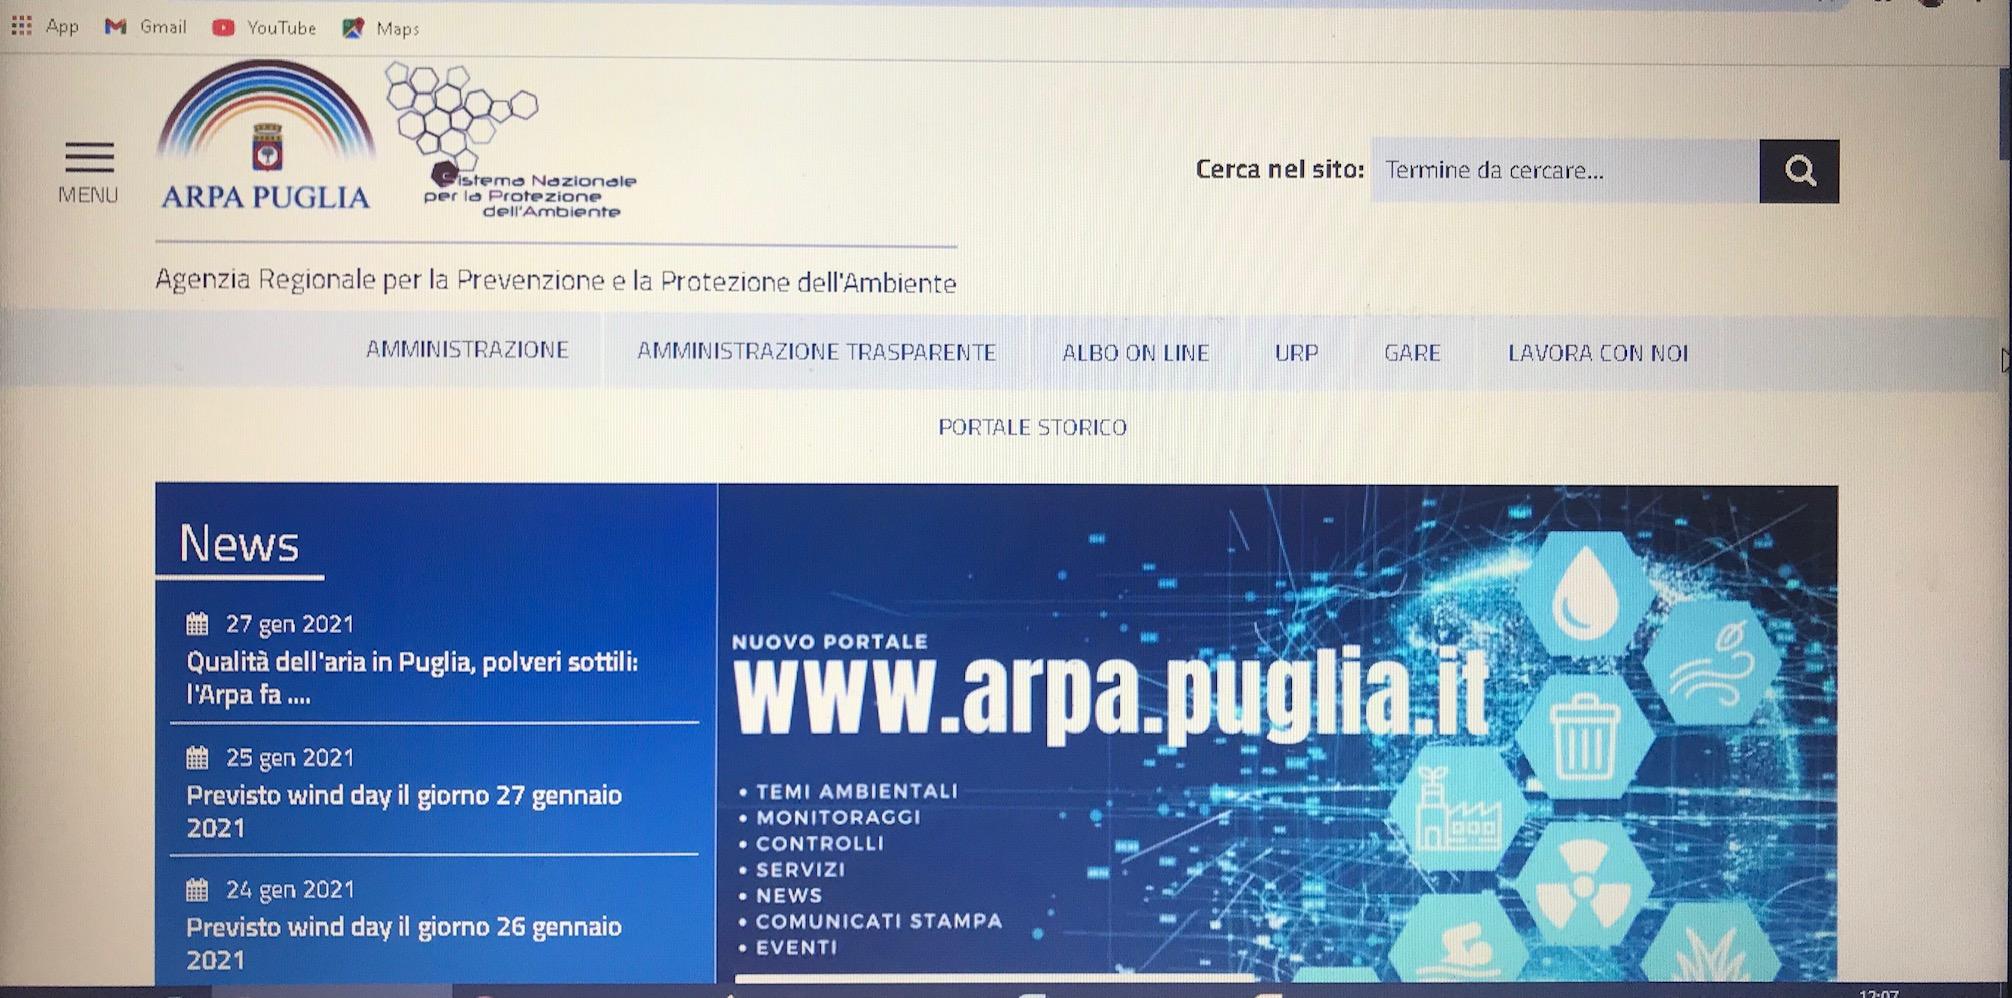  Presentato il nuovo sito internet di Arpa Puglia